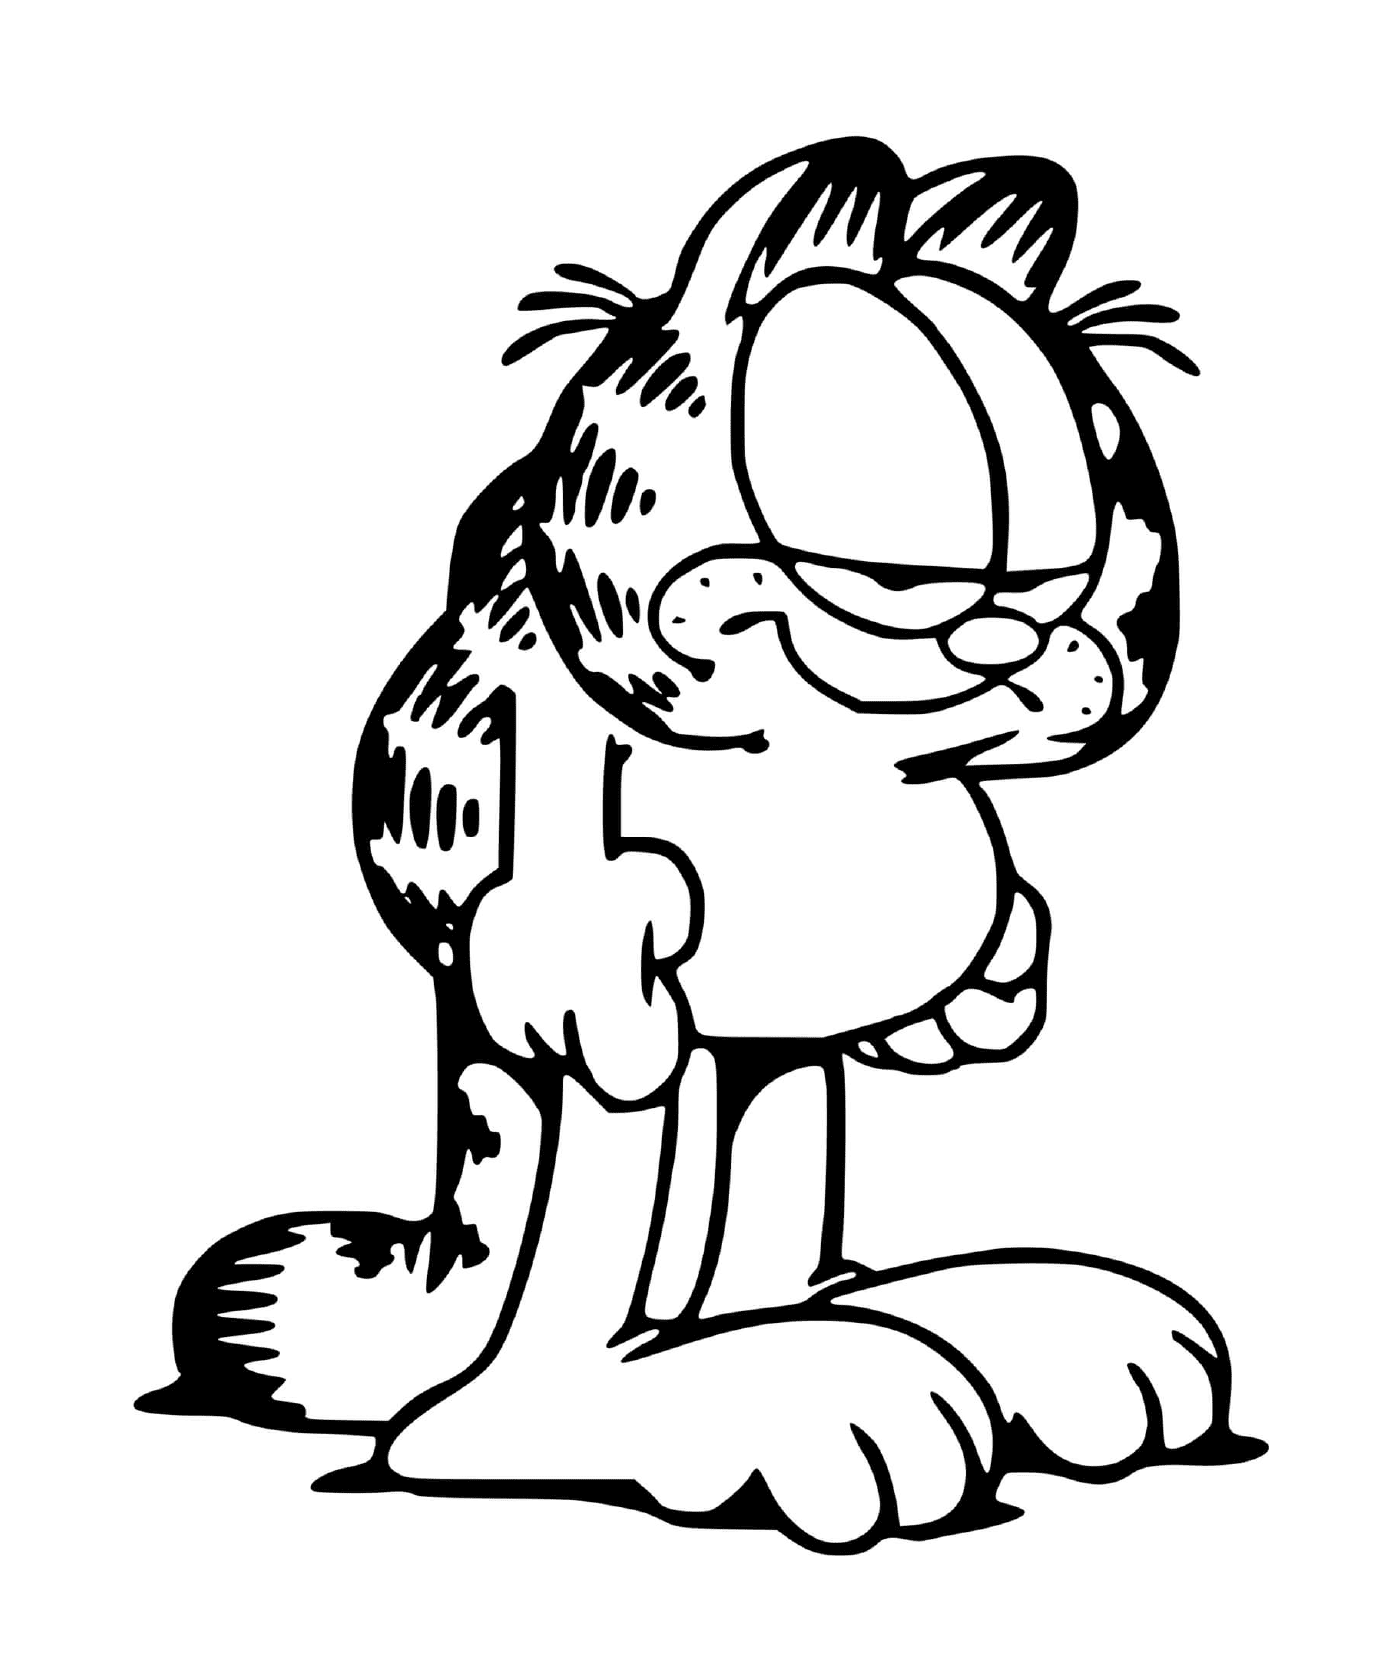  Garfield siempre cansado y agotado 